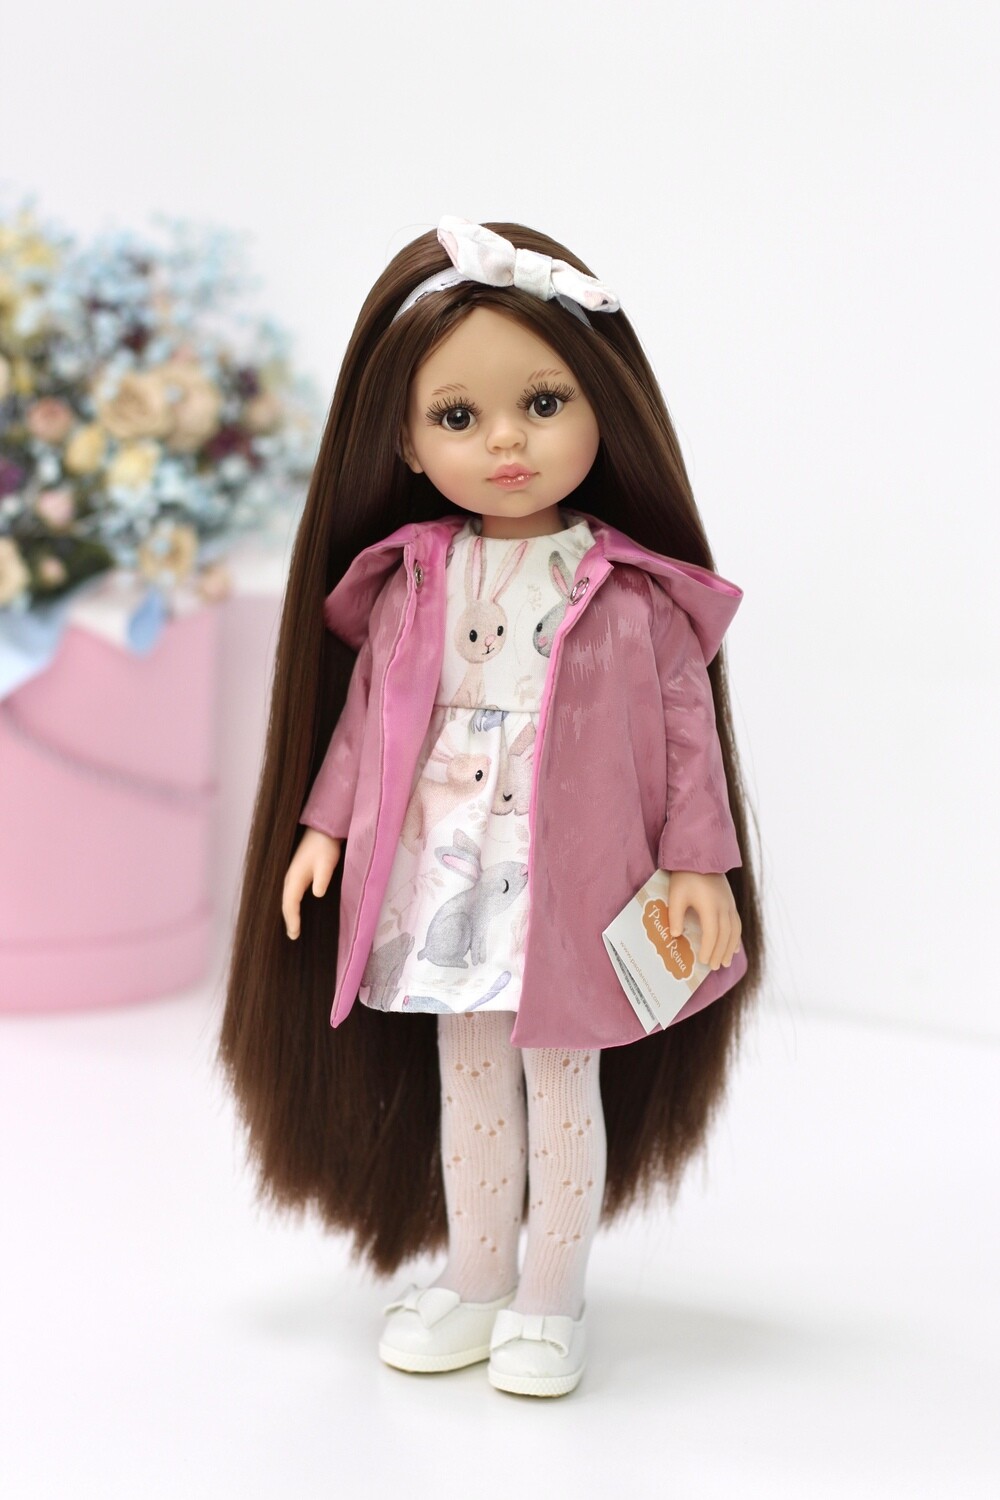 Кукла Кэрол Рапунцель с длинными волосами в стильном платье, колготках, плаще и обуви на ножках (Паола Рейна) (пижама в комплекте), 34 см